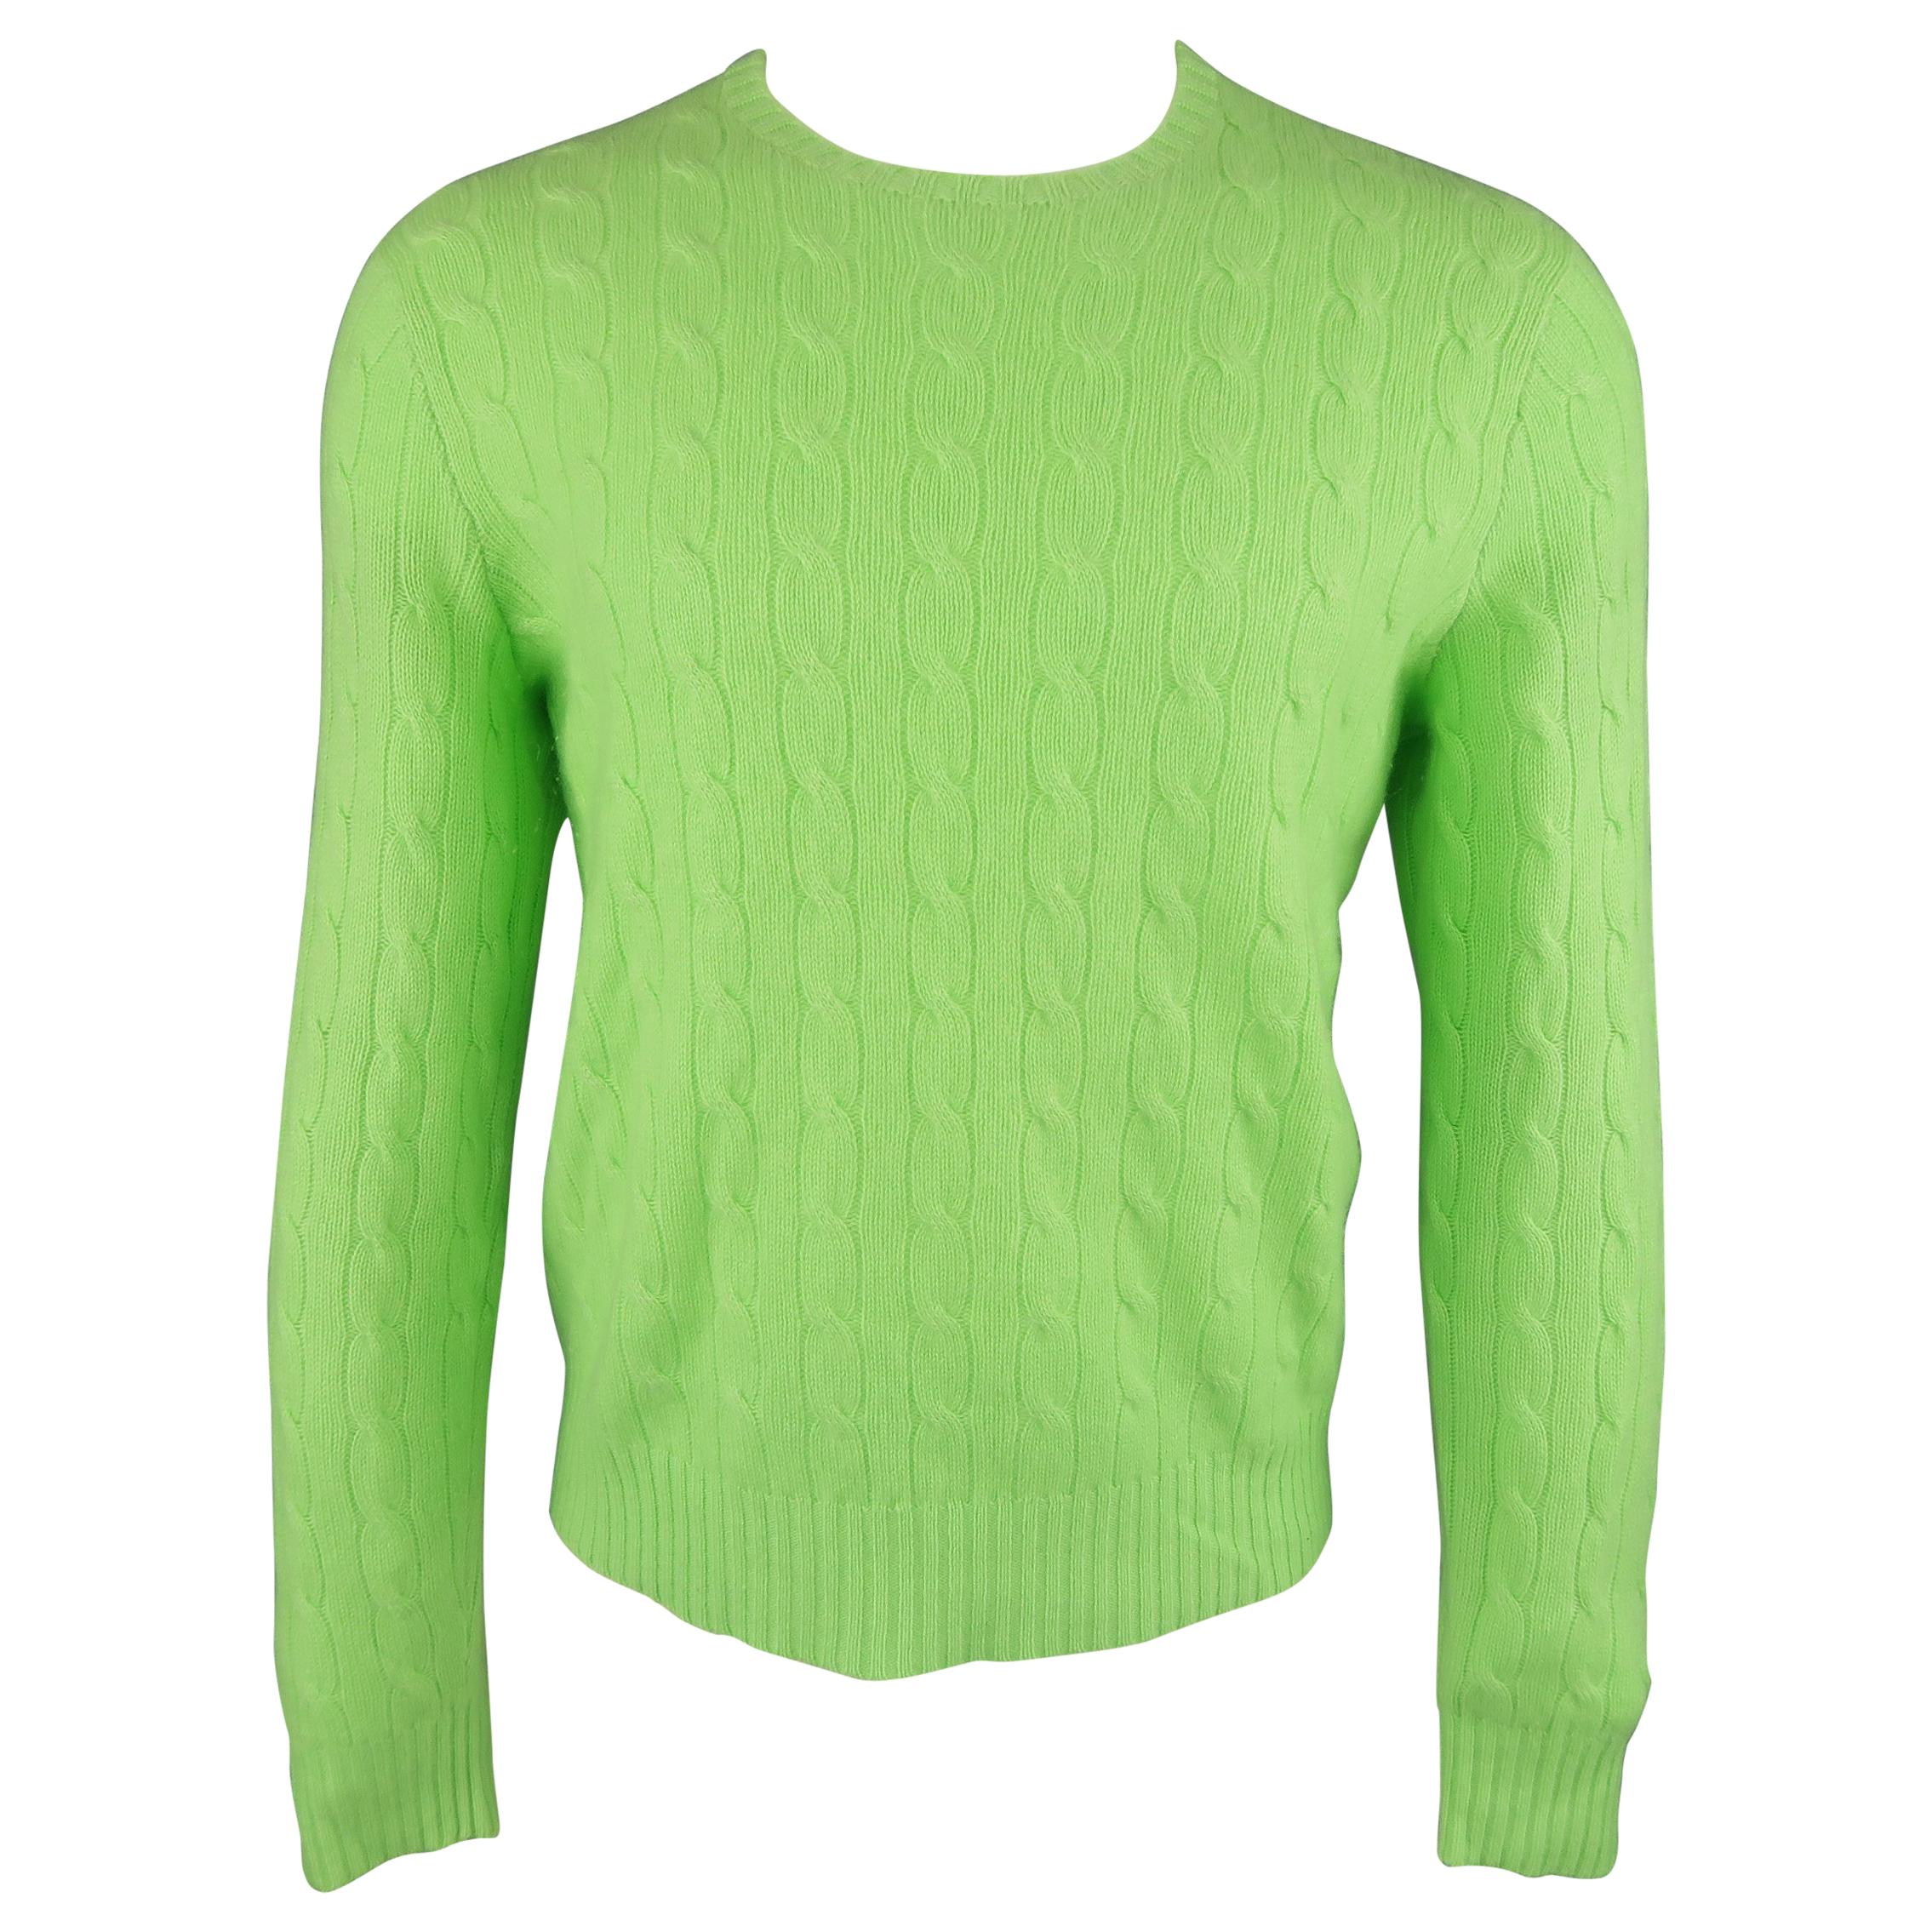 Ralph Lauren Light Green Knit Cashmere Sweater